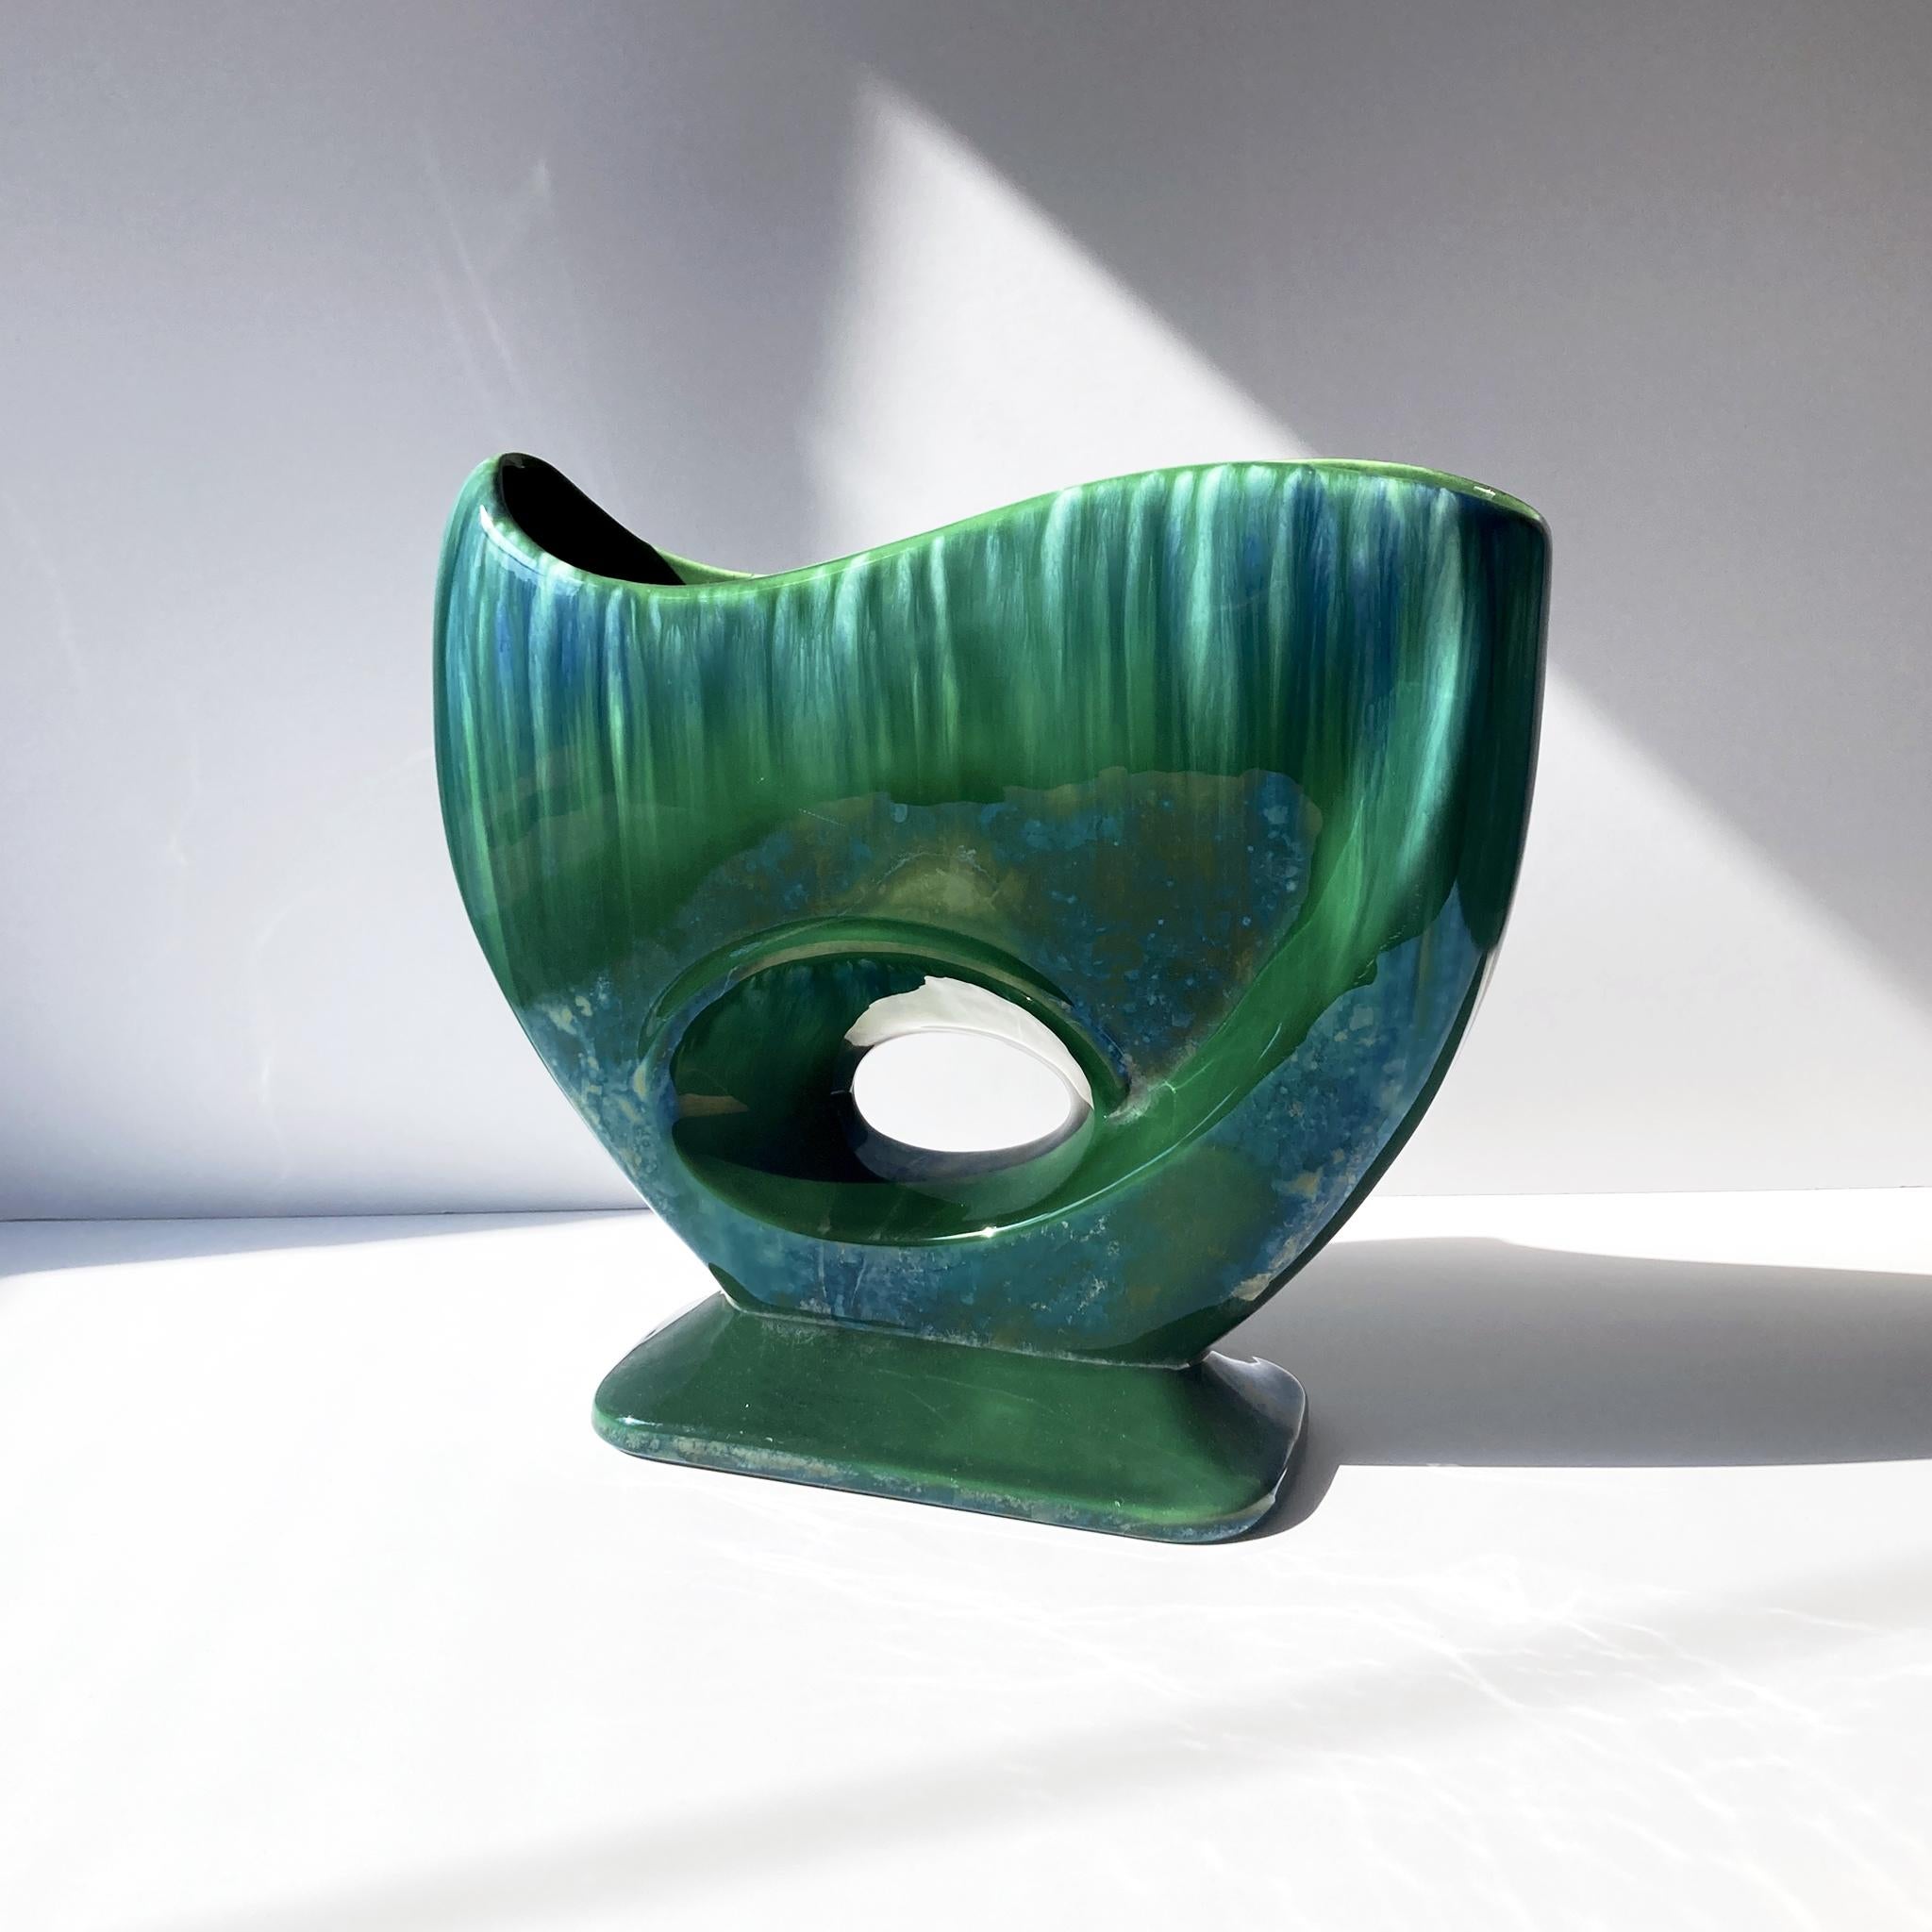 Wunderschöne abstrakte Vase Royal Haeger Green, mittelgroß, Modell R886. Sieht allein oder als Teil einer Gruppe umwerfend aus. Die Tropfglasur fängt das Licht schön ein, und über dem Grün befindet sich eine leichte Glanzglasur. In gutem